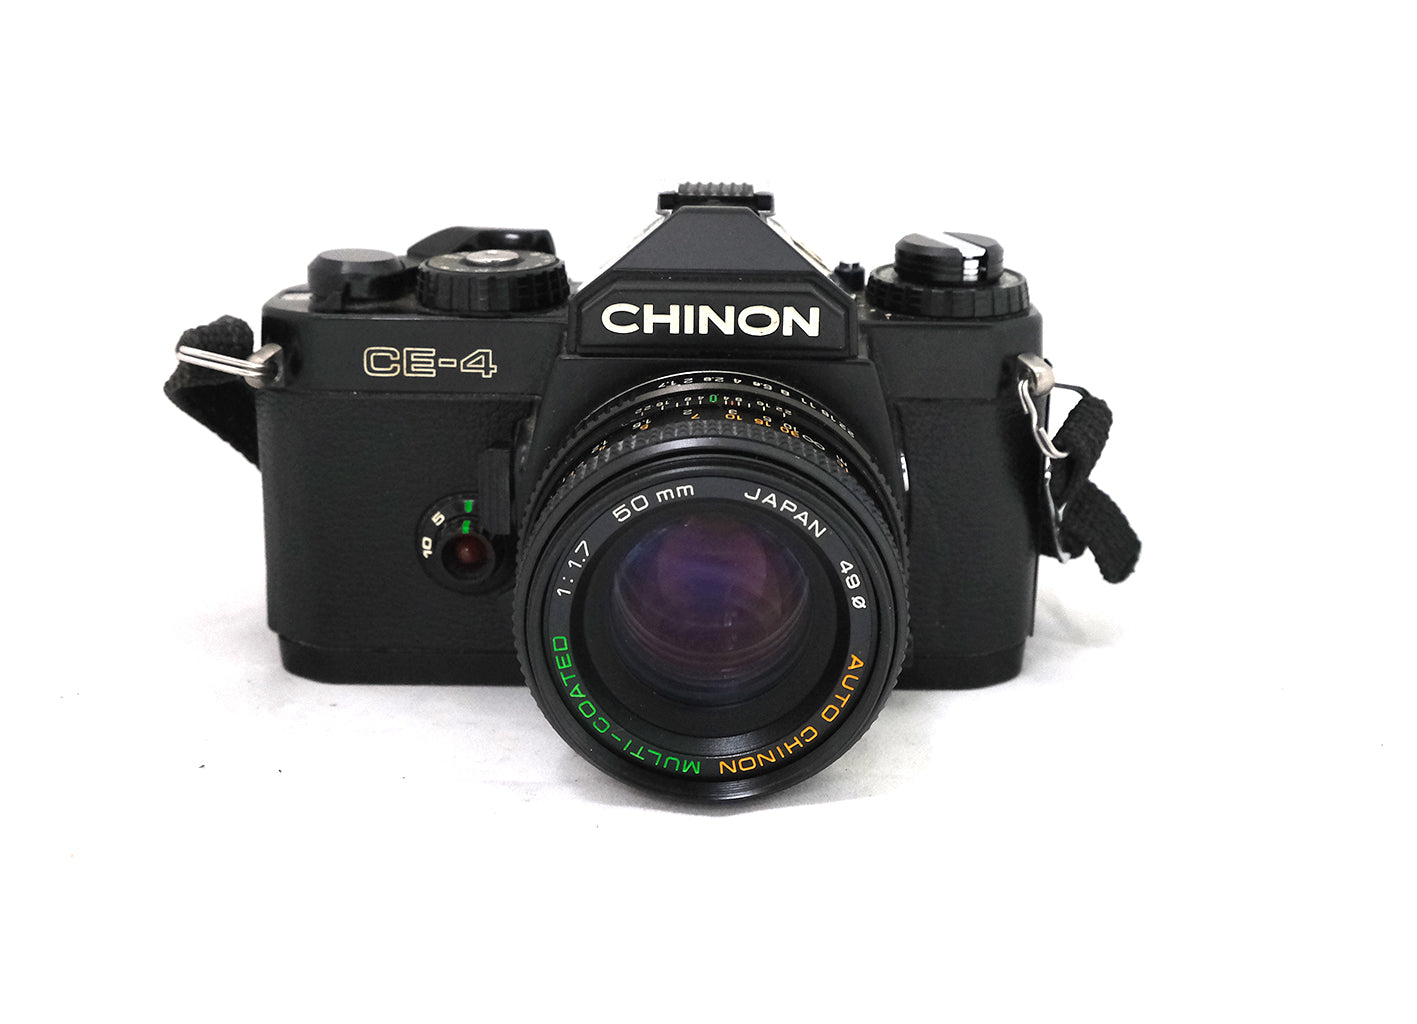 Chinon CE-4 + Chinon 50mm F/1,7